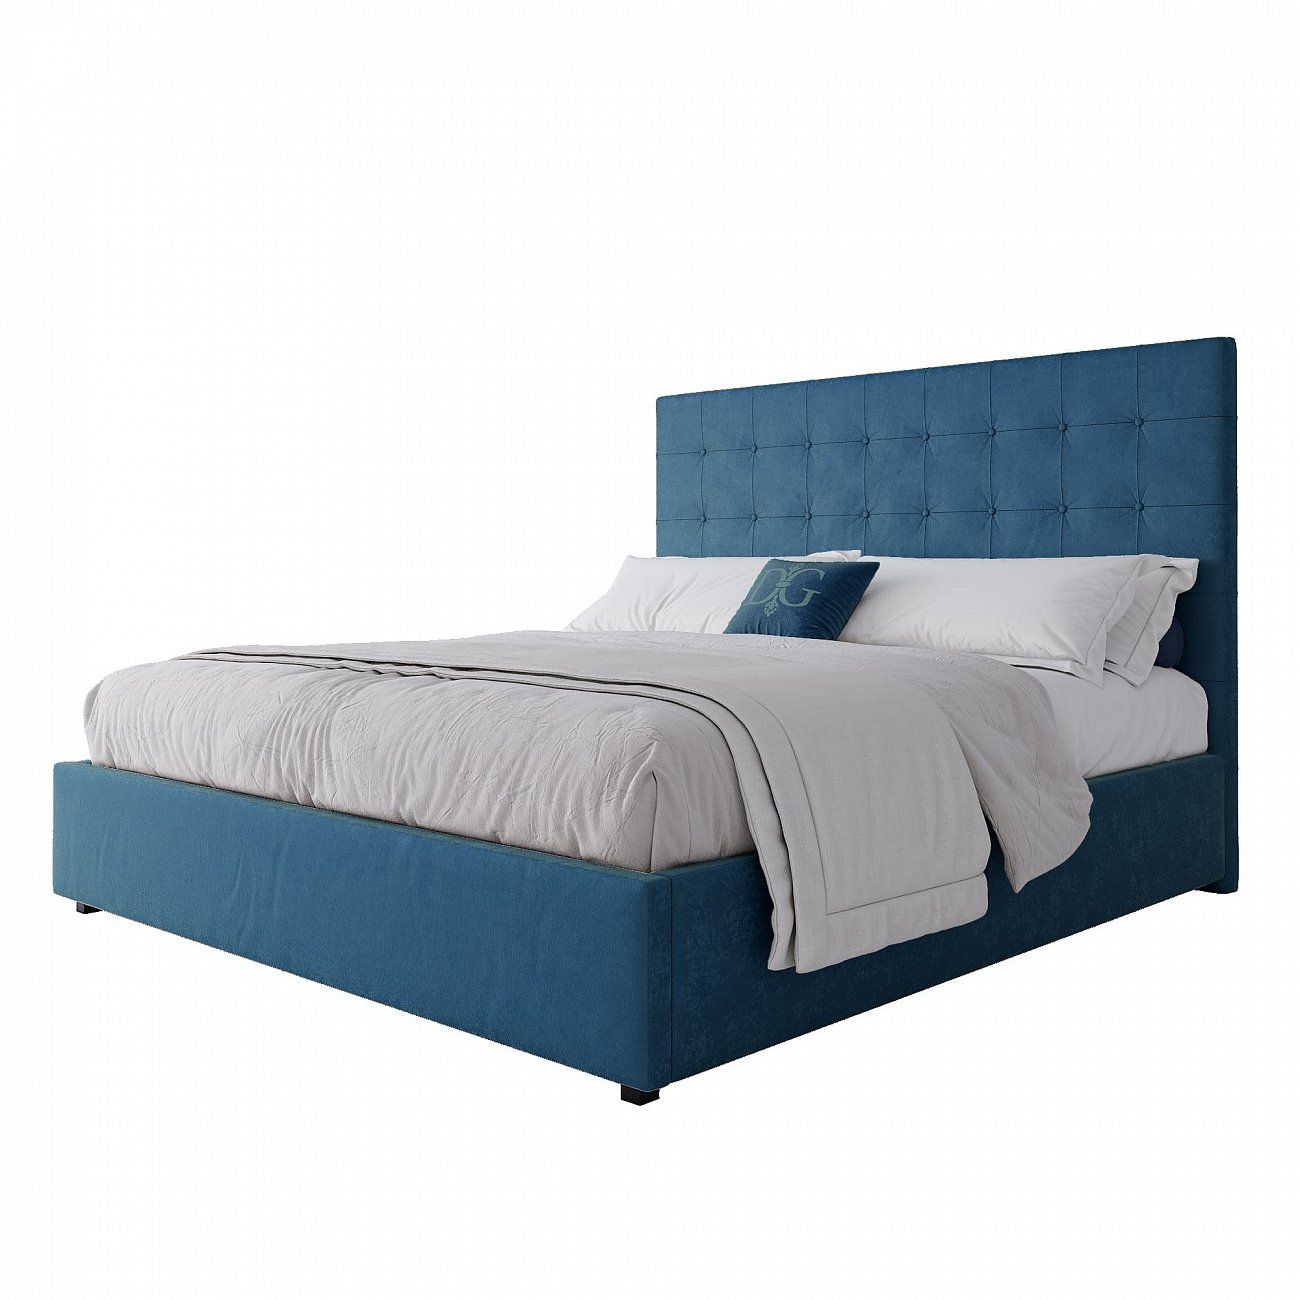 Кровать двуспальная с мягким изголовьем 180х200 см морская волна Royal Black